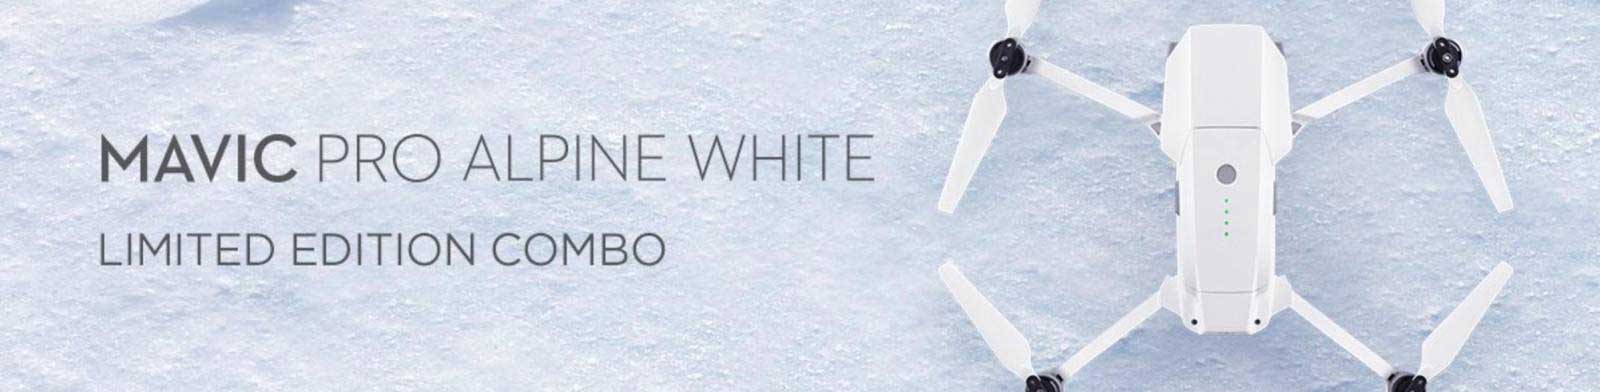 jual drone DJI Mavic Pro Combo Alpine White harga murah surabaya jakarta